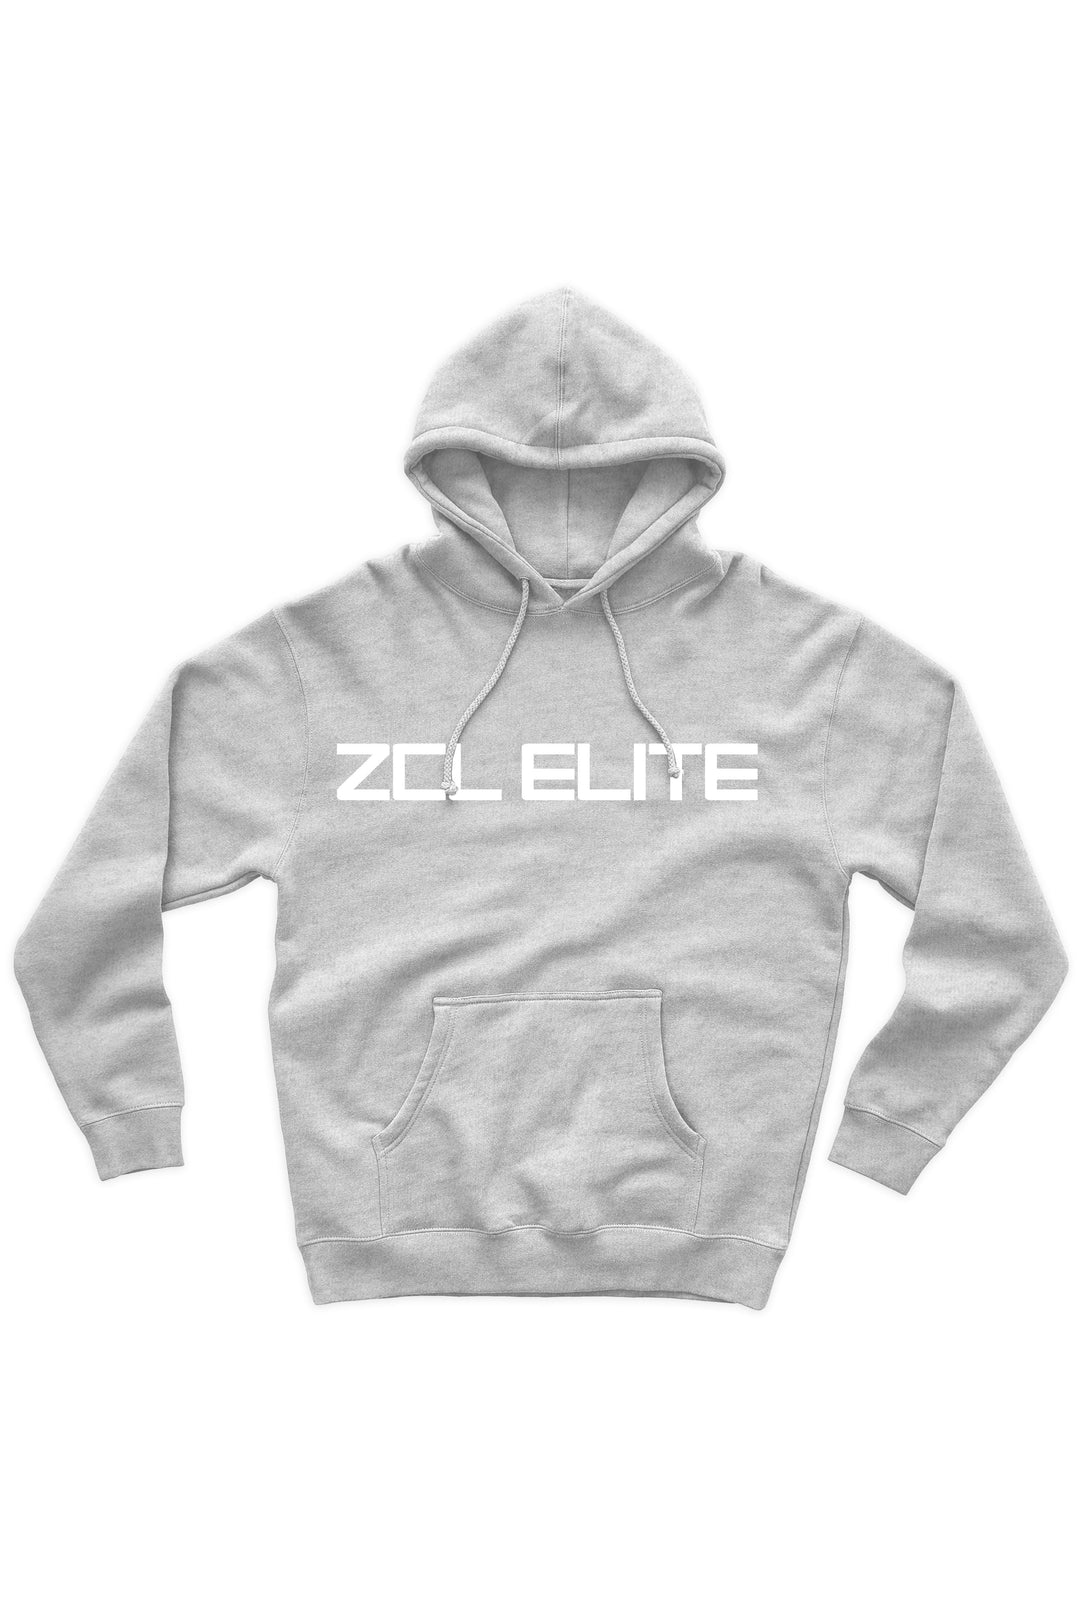 ZCL Elite Hoodie (White Logo) - Zamage